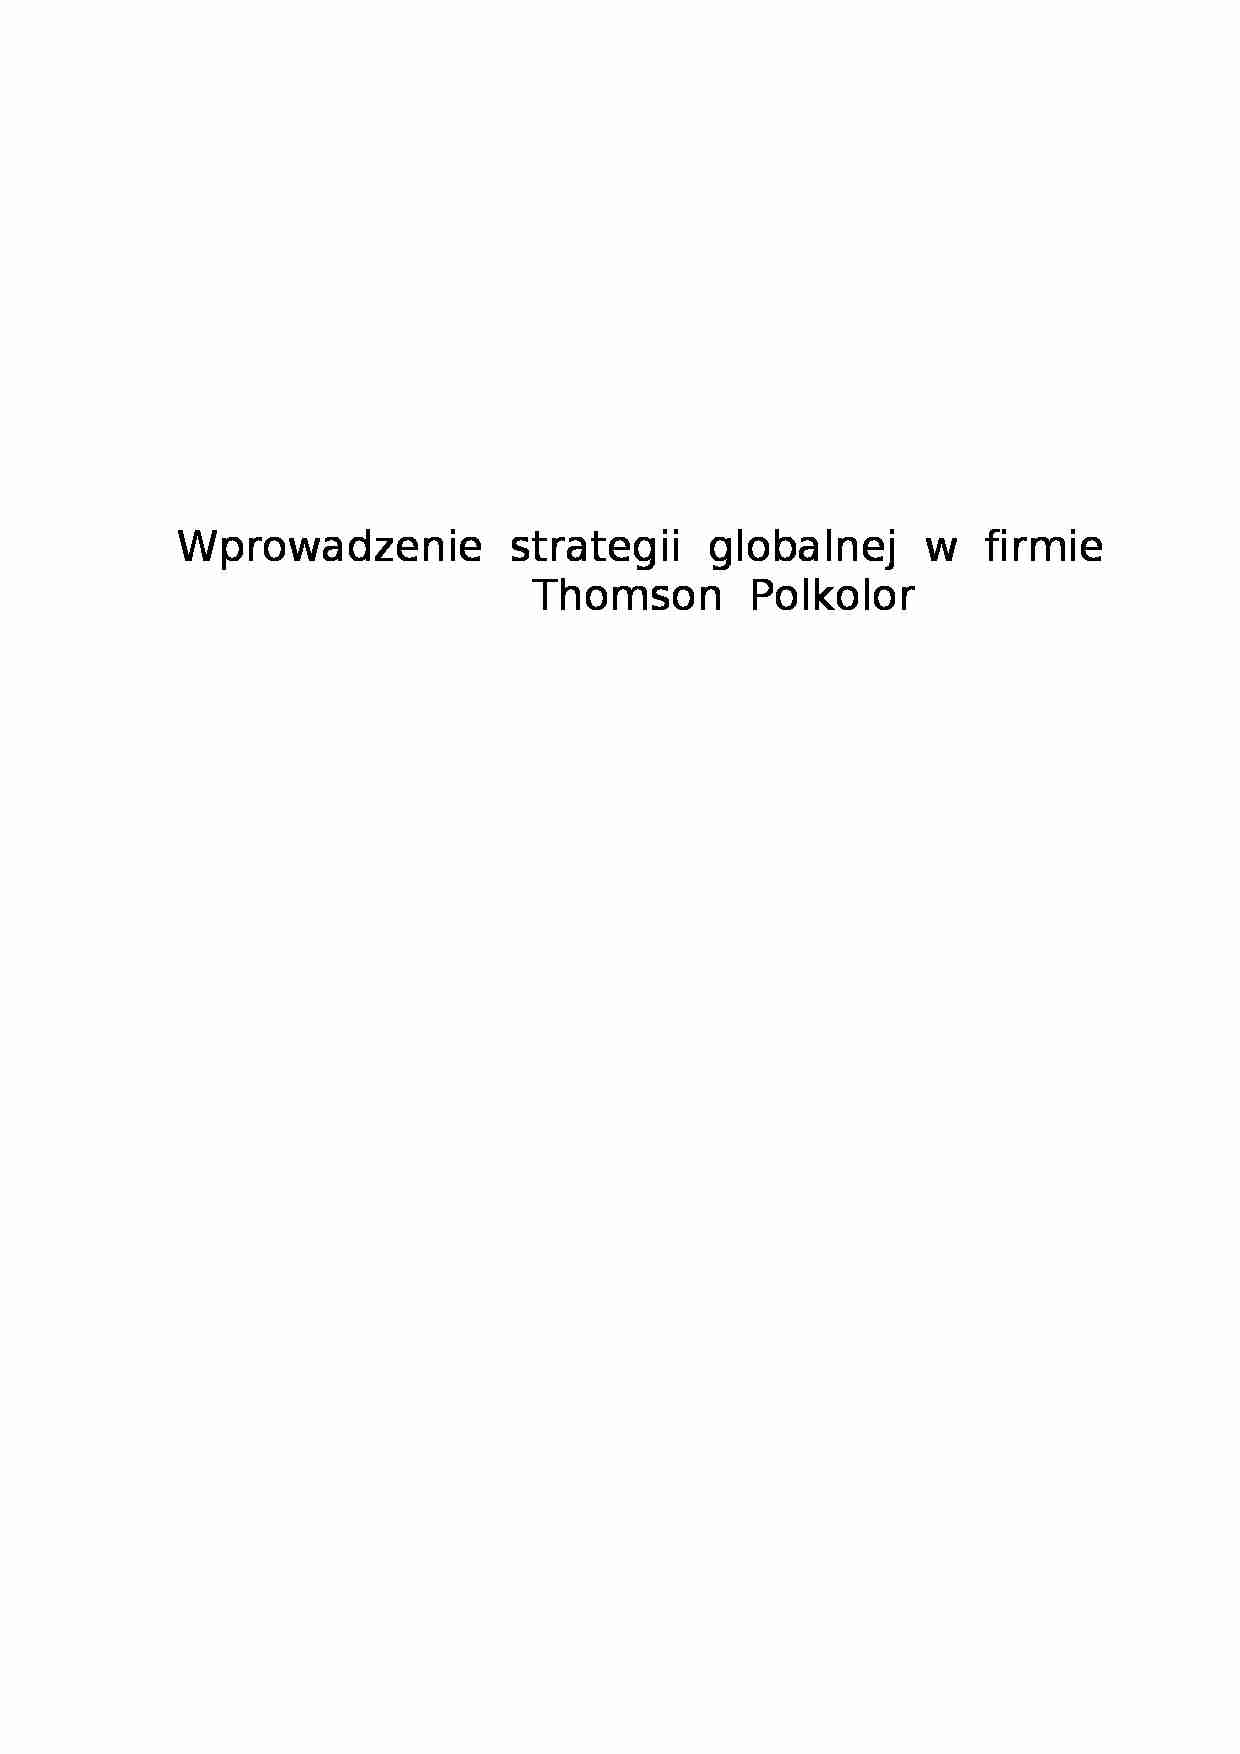 Wprowadzenie strategi globalnej Thomson - strona 1